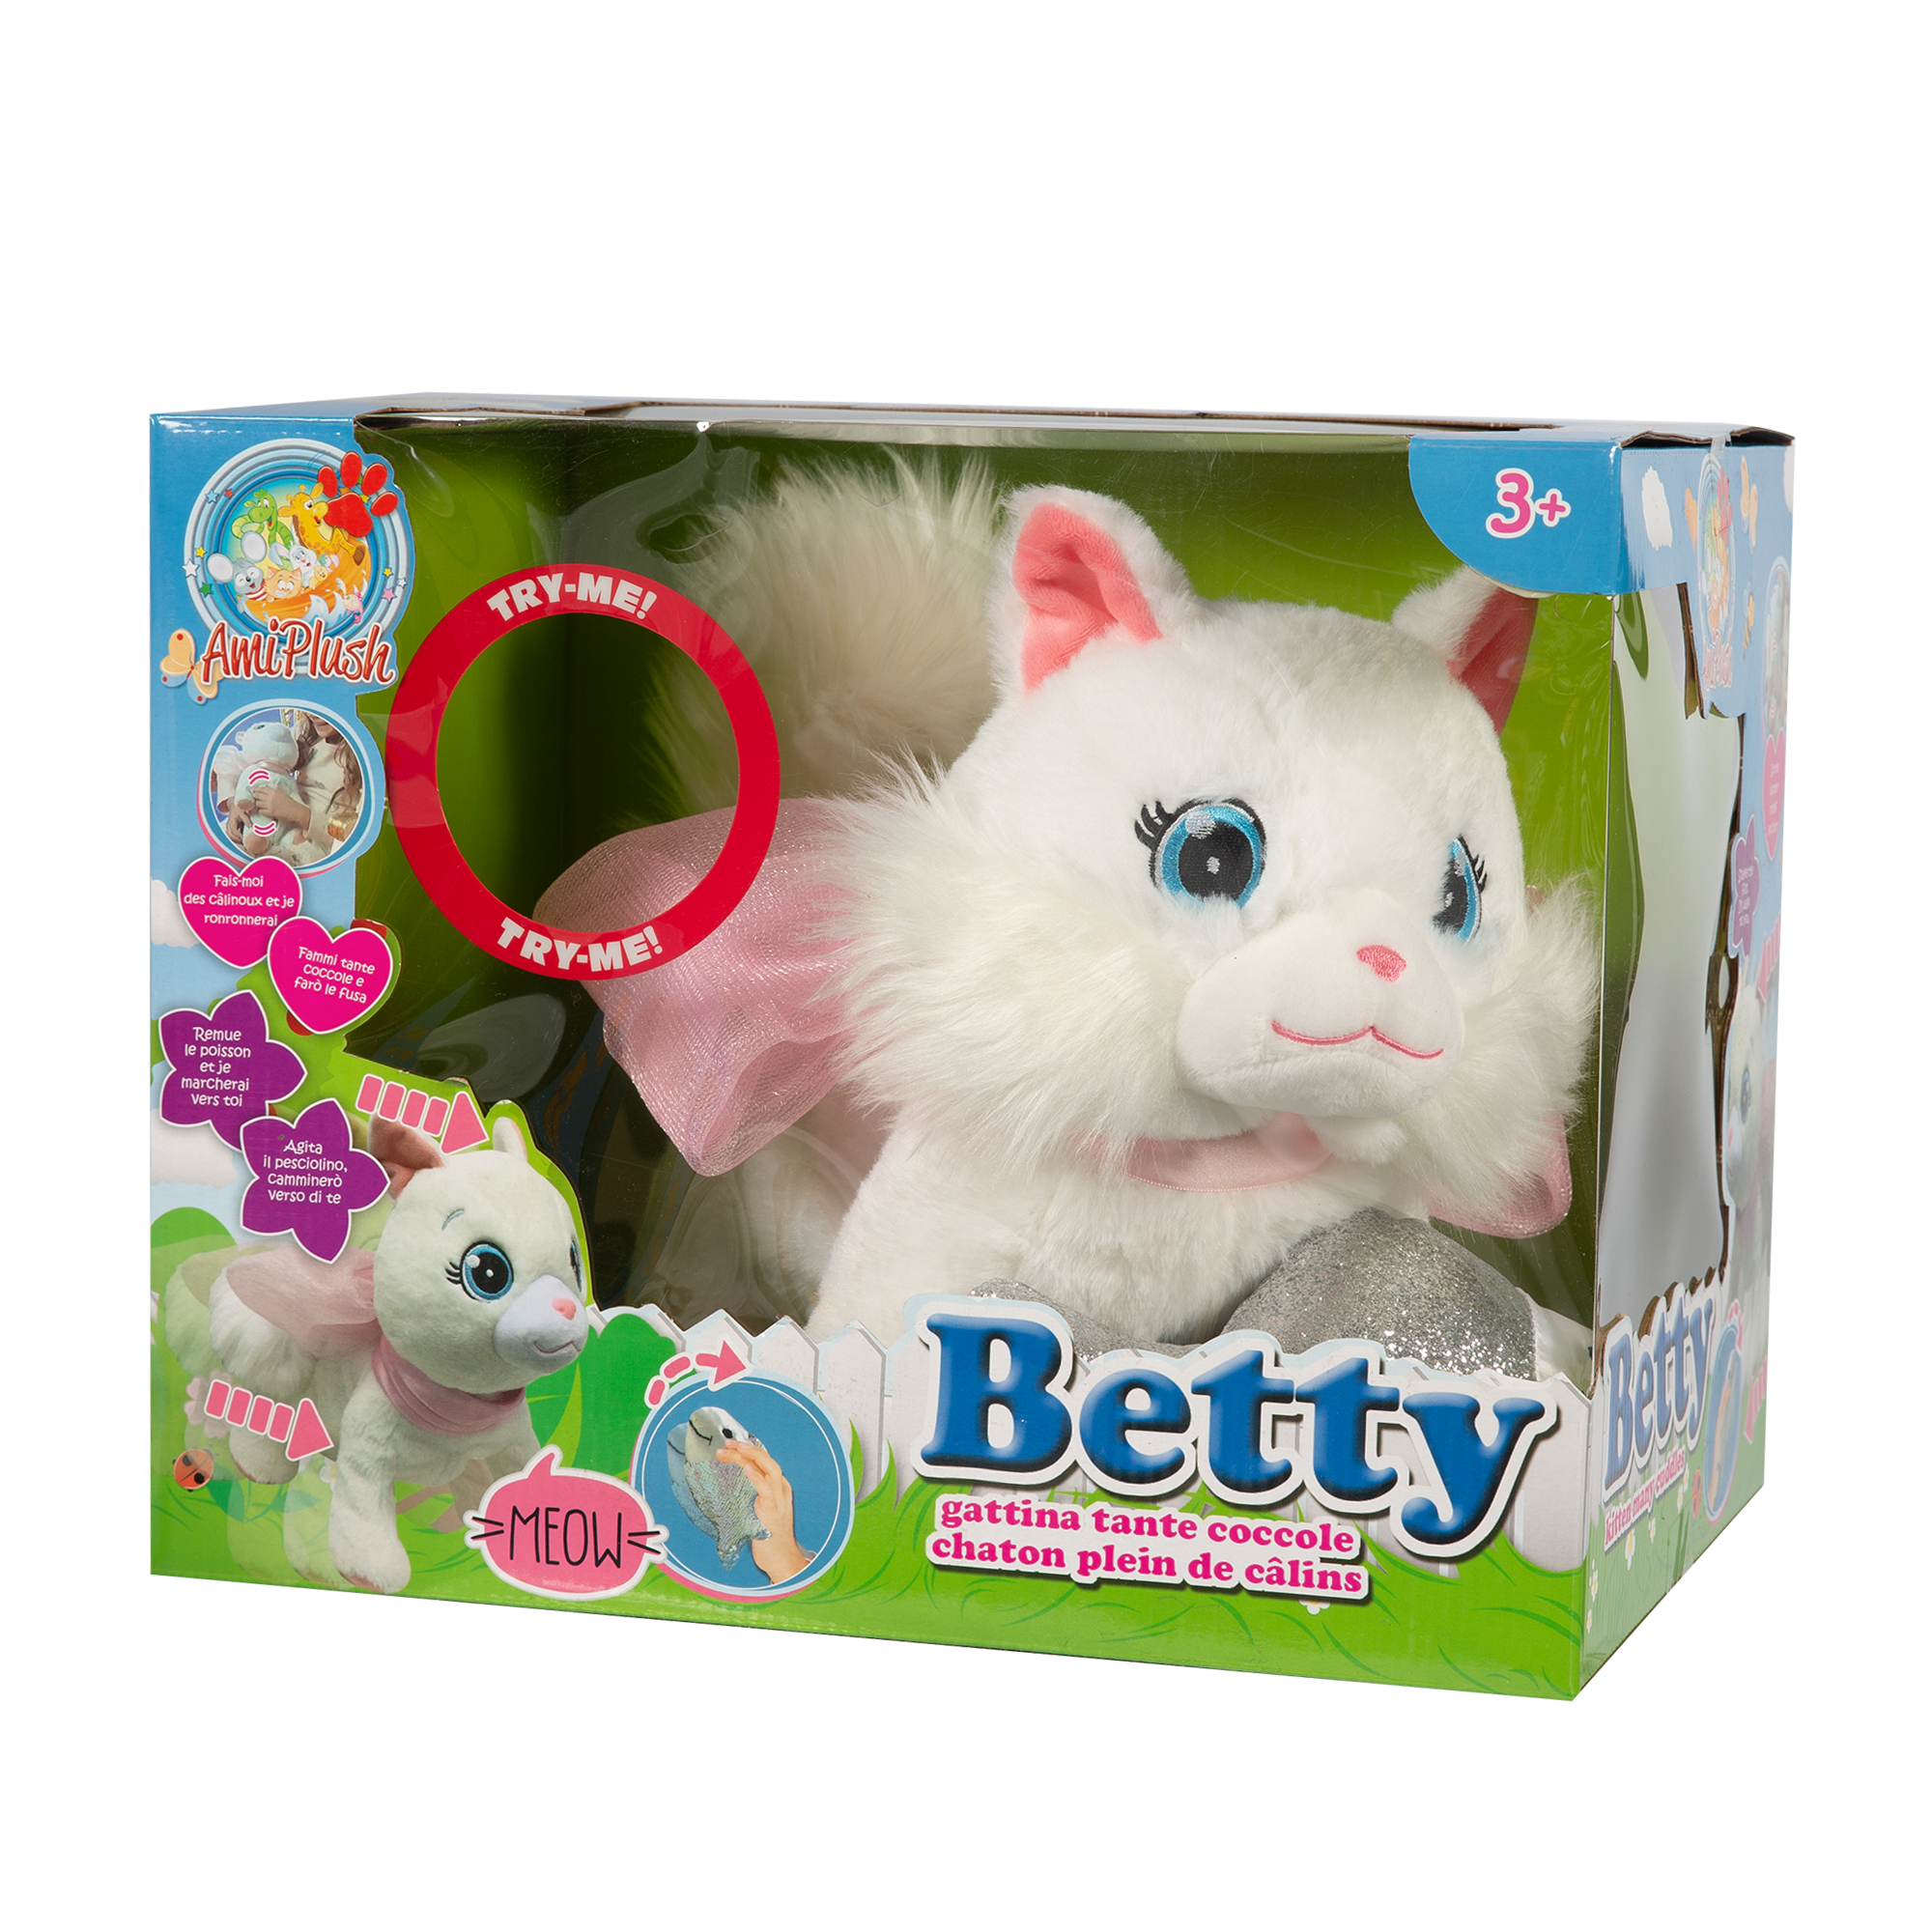 Betty - gattina tante coccole - AMI PLUSH